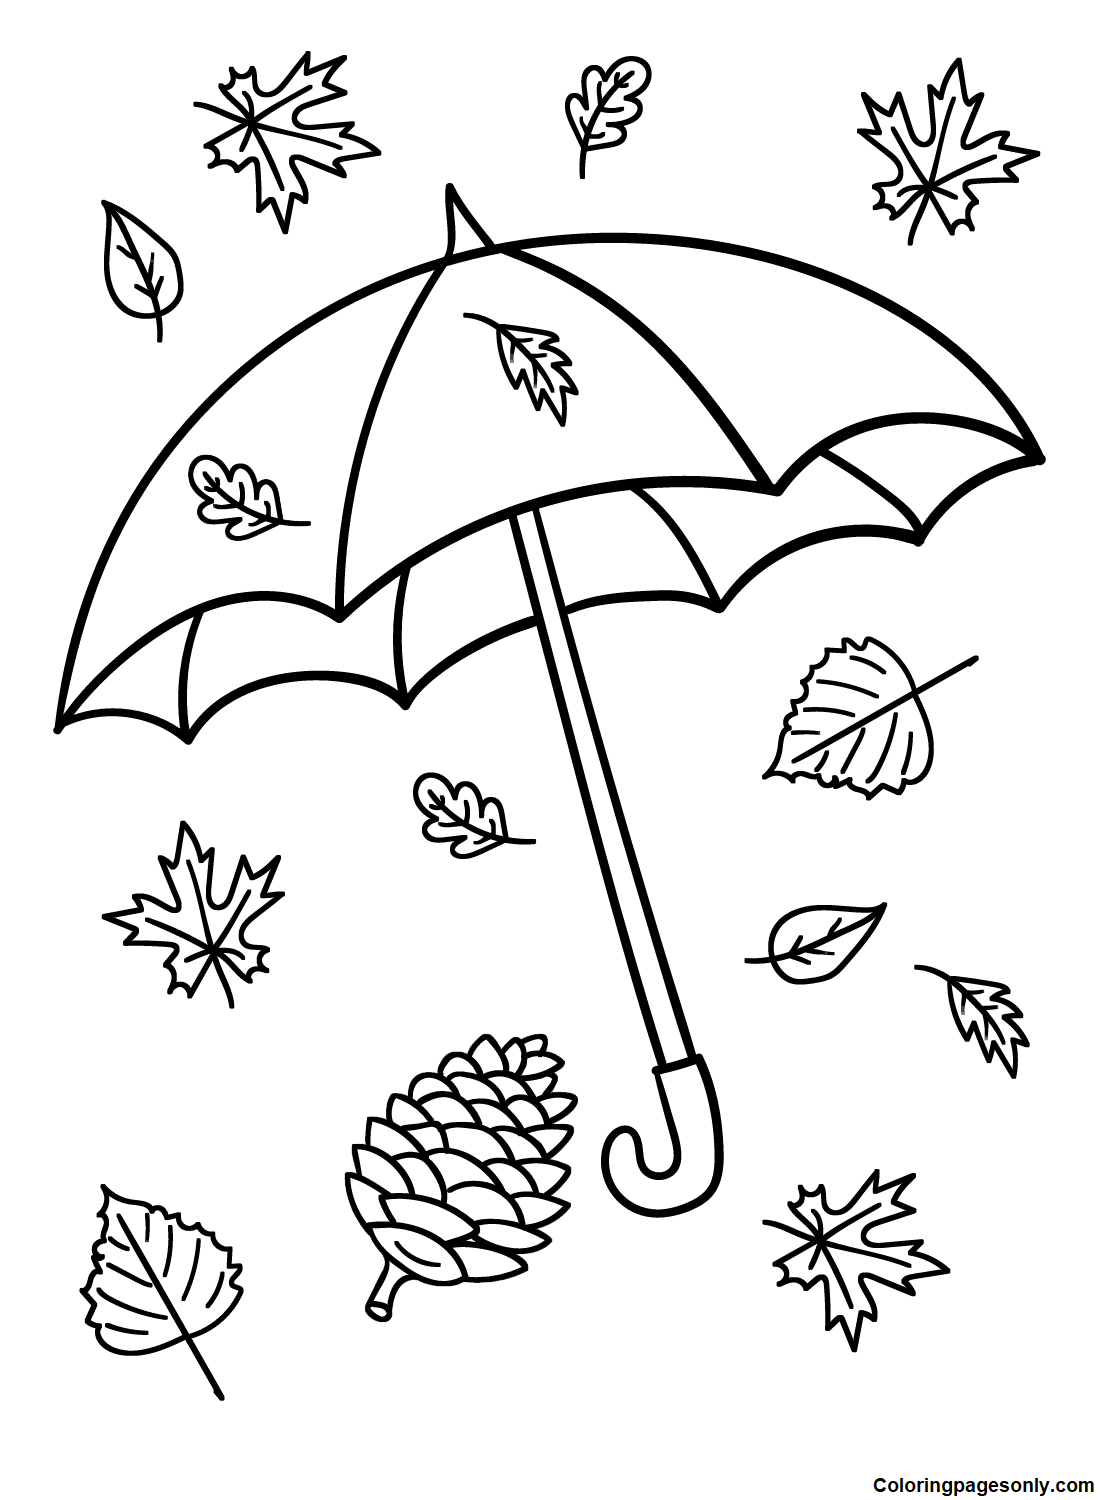 雨伞和伞叶